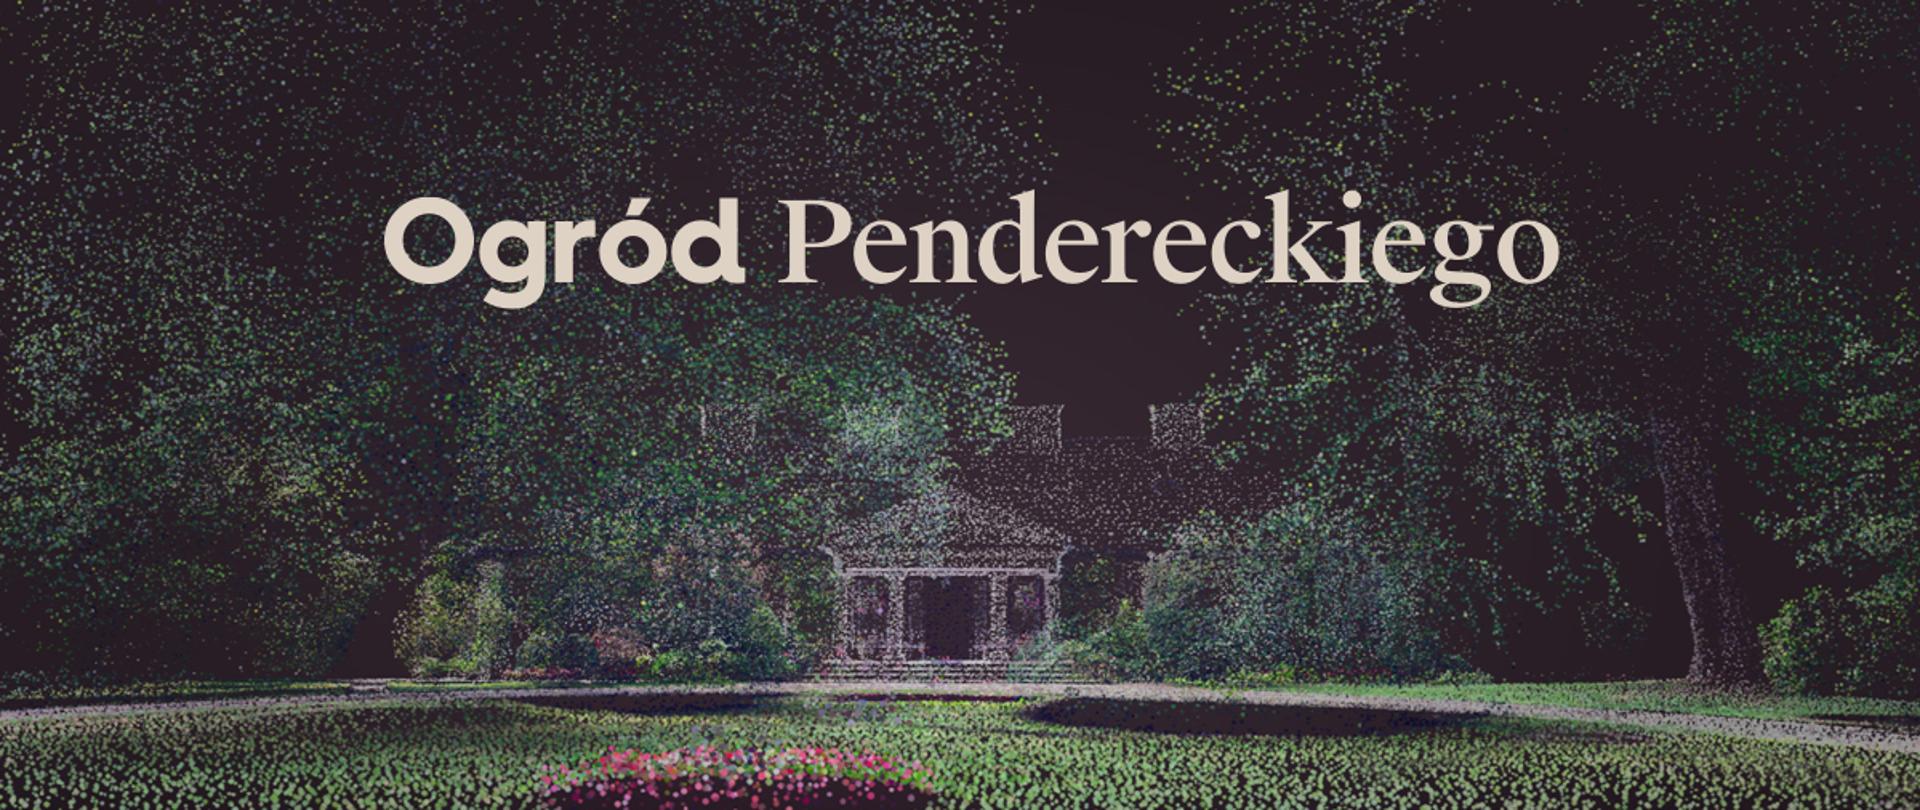 Ogród Pendereckiego